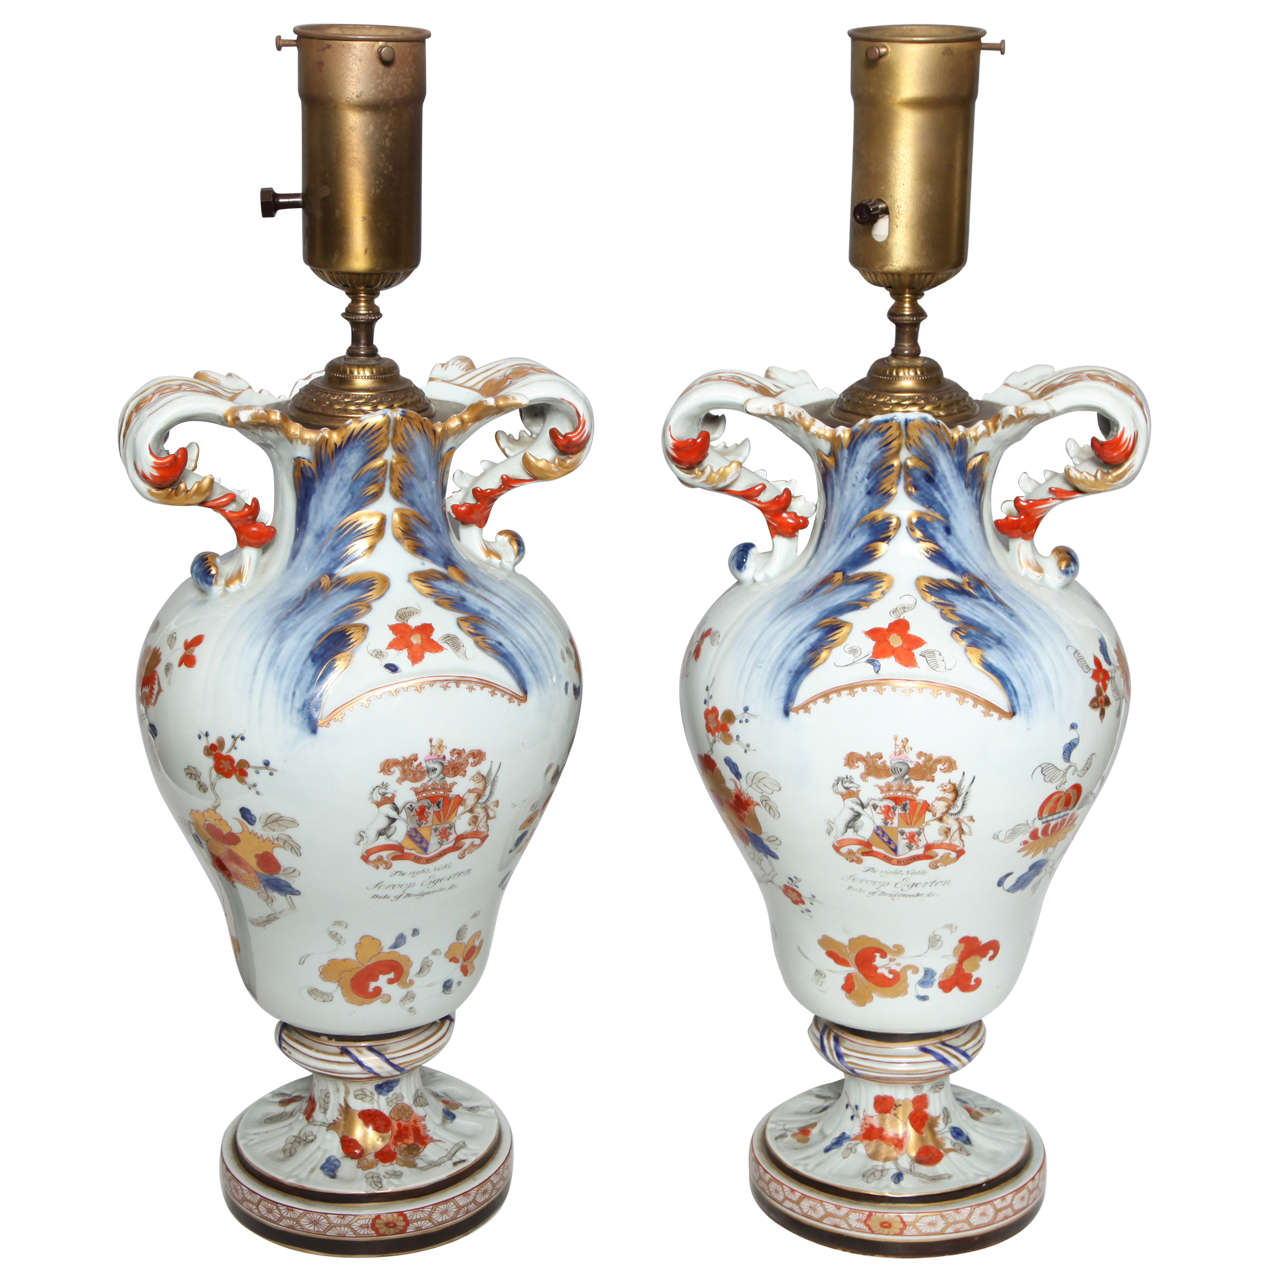 Paire de vases anciens en porcelaine d'exportation chinoise avec armoiries anglaises